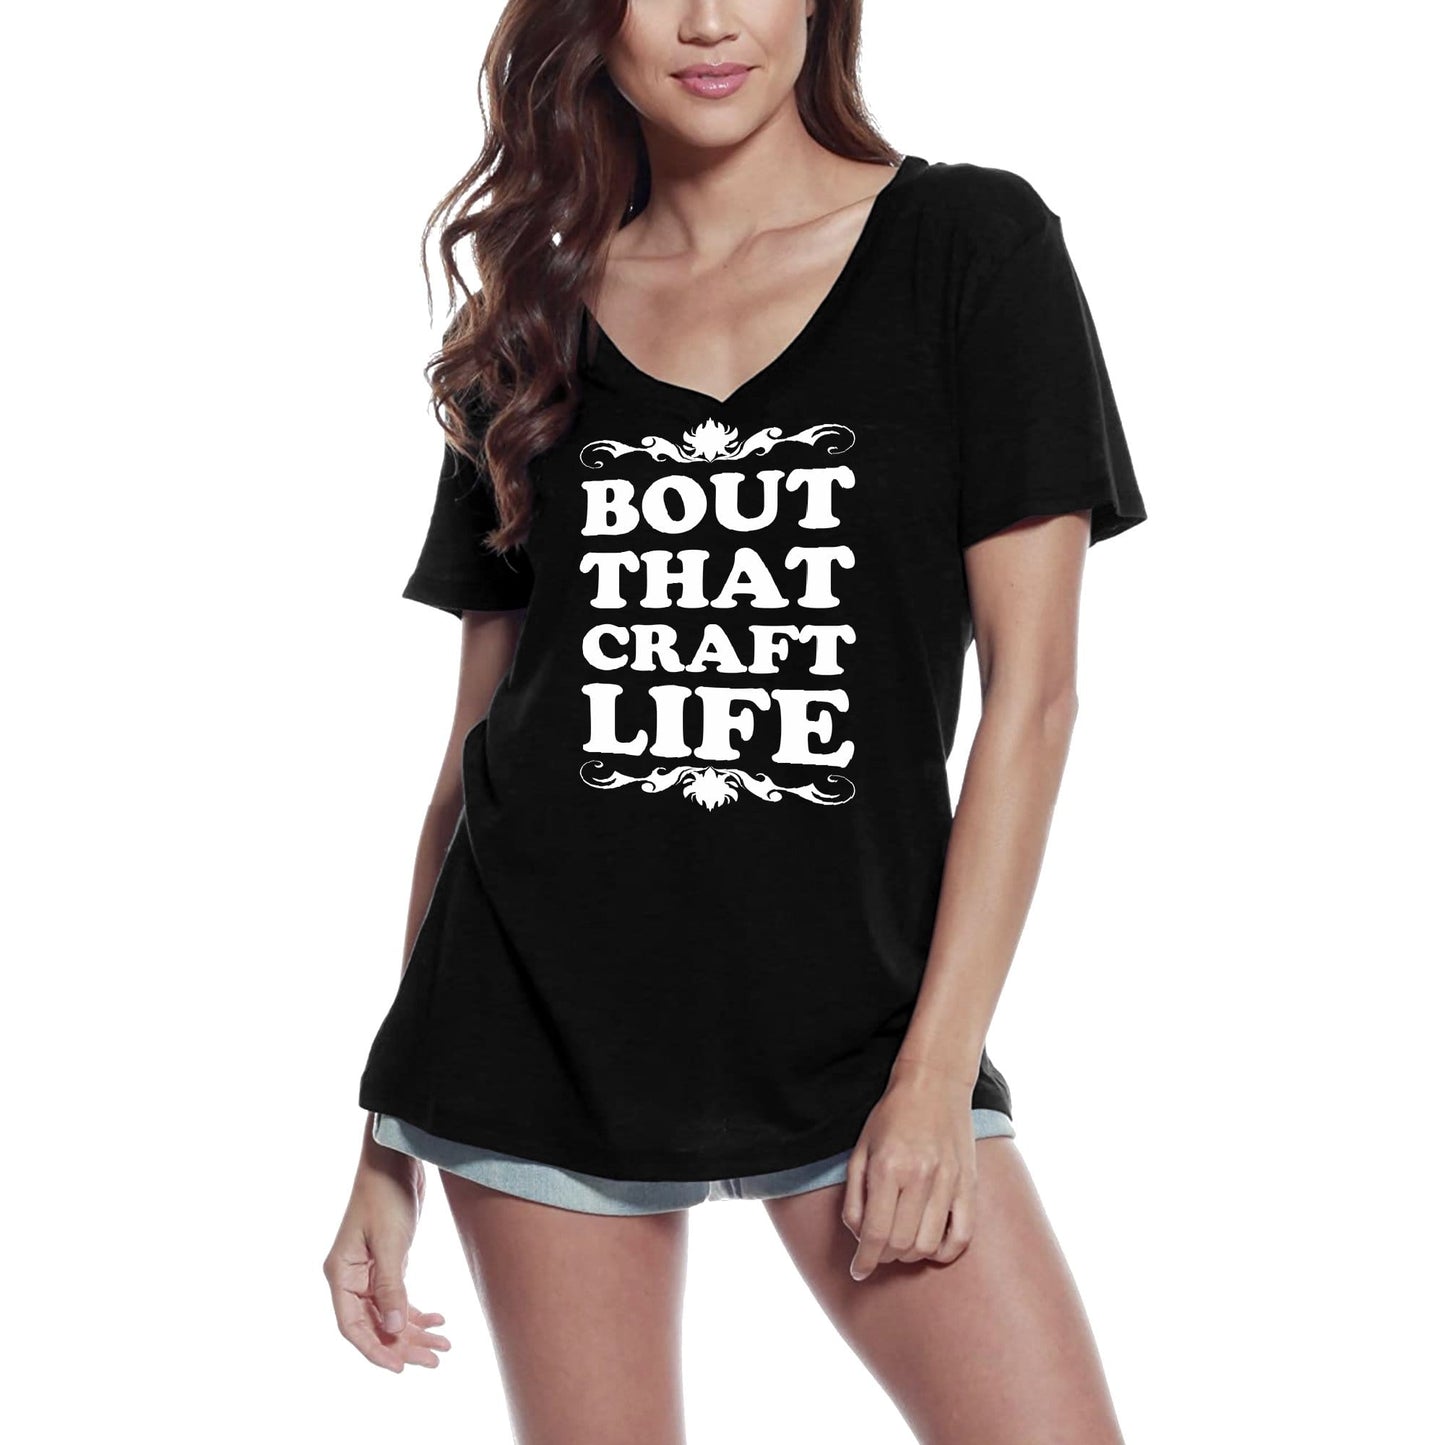 ULTRABASIC Women's T-Shirt Bout That Craft Life - Short Sleeve Tee Shirt Tops